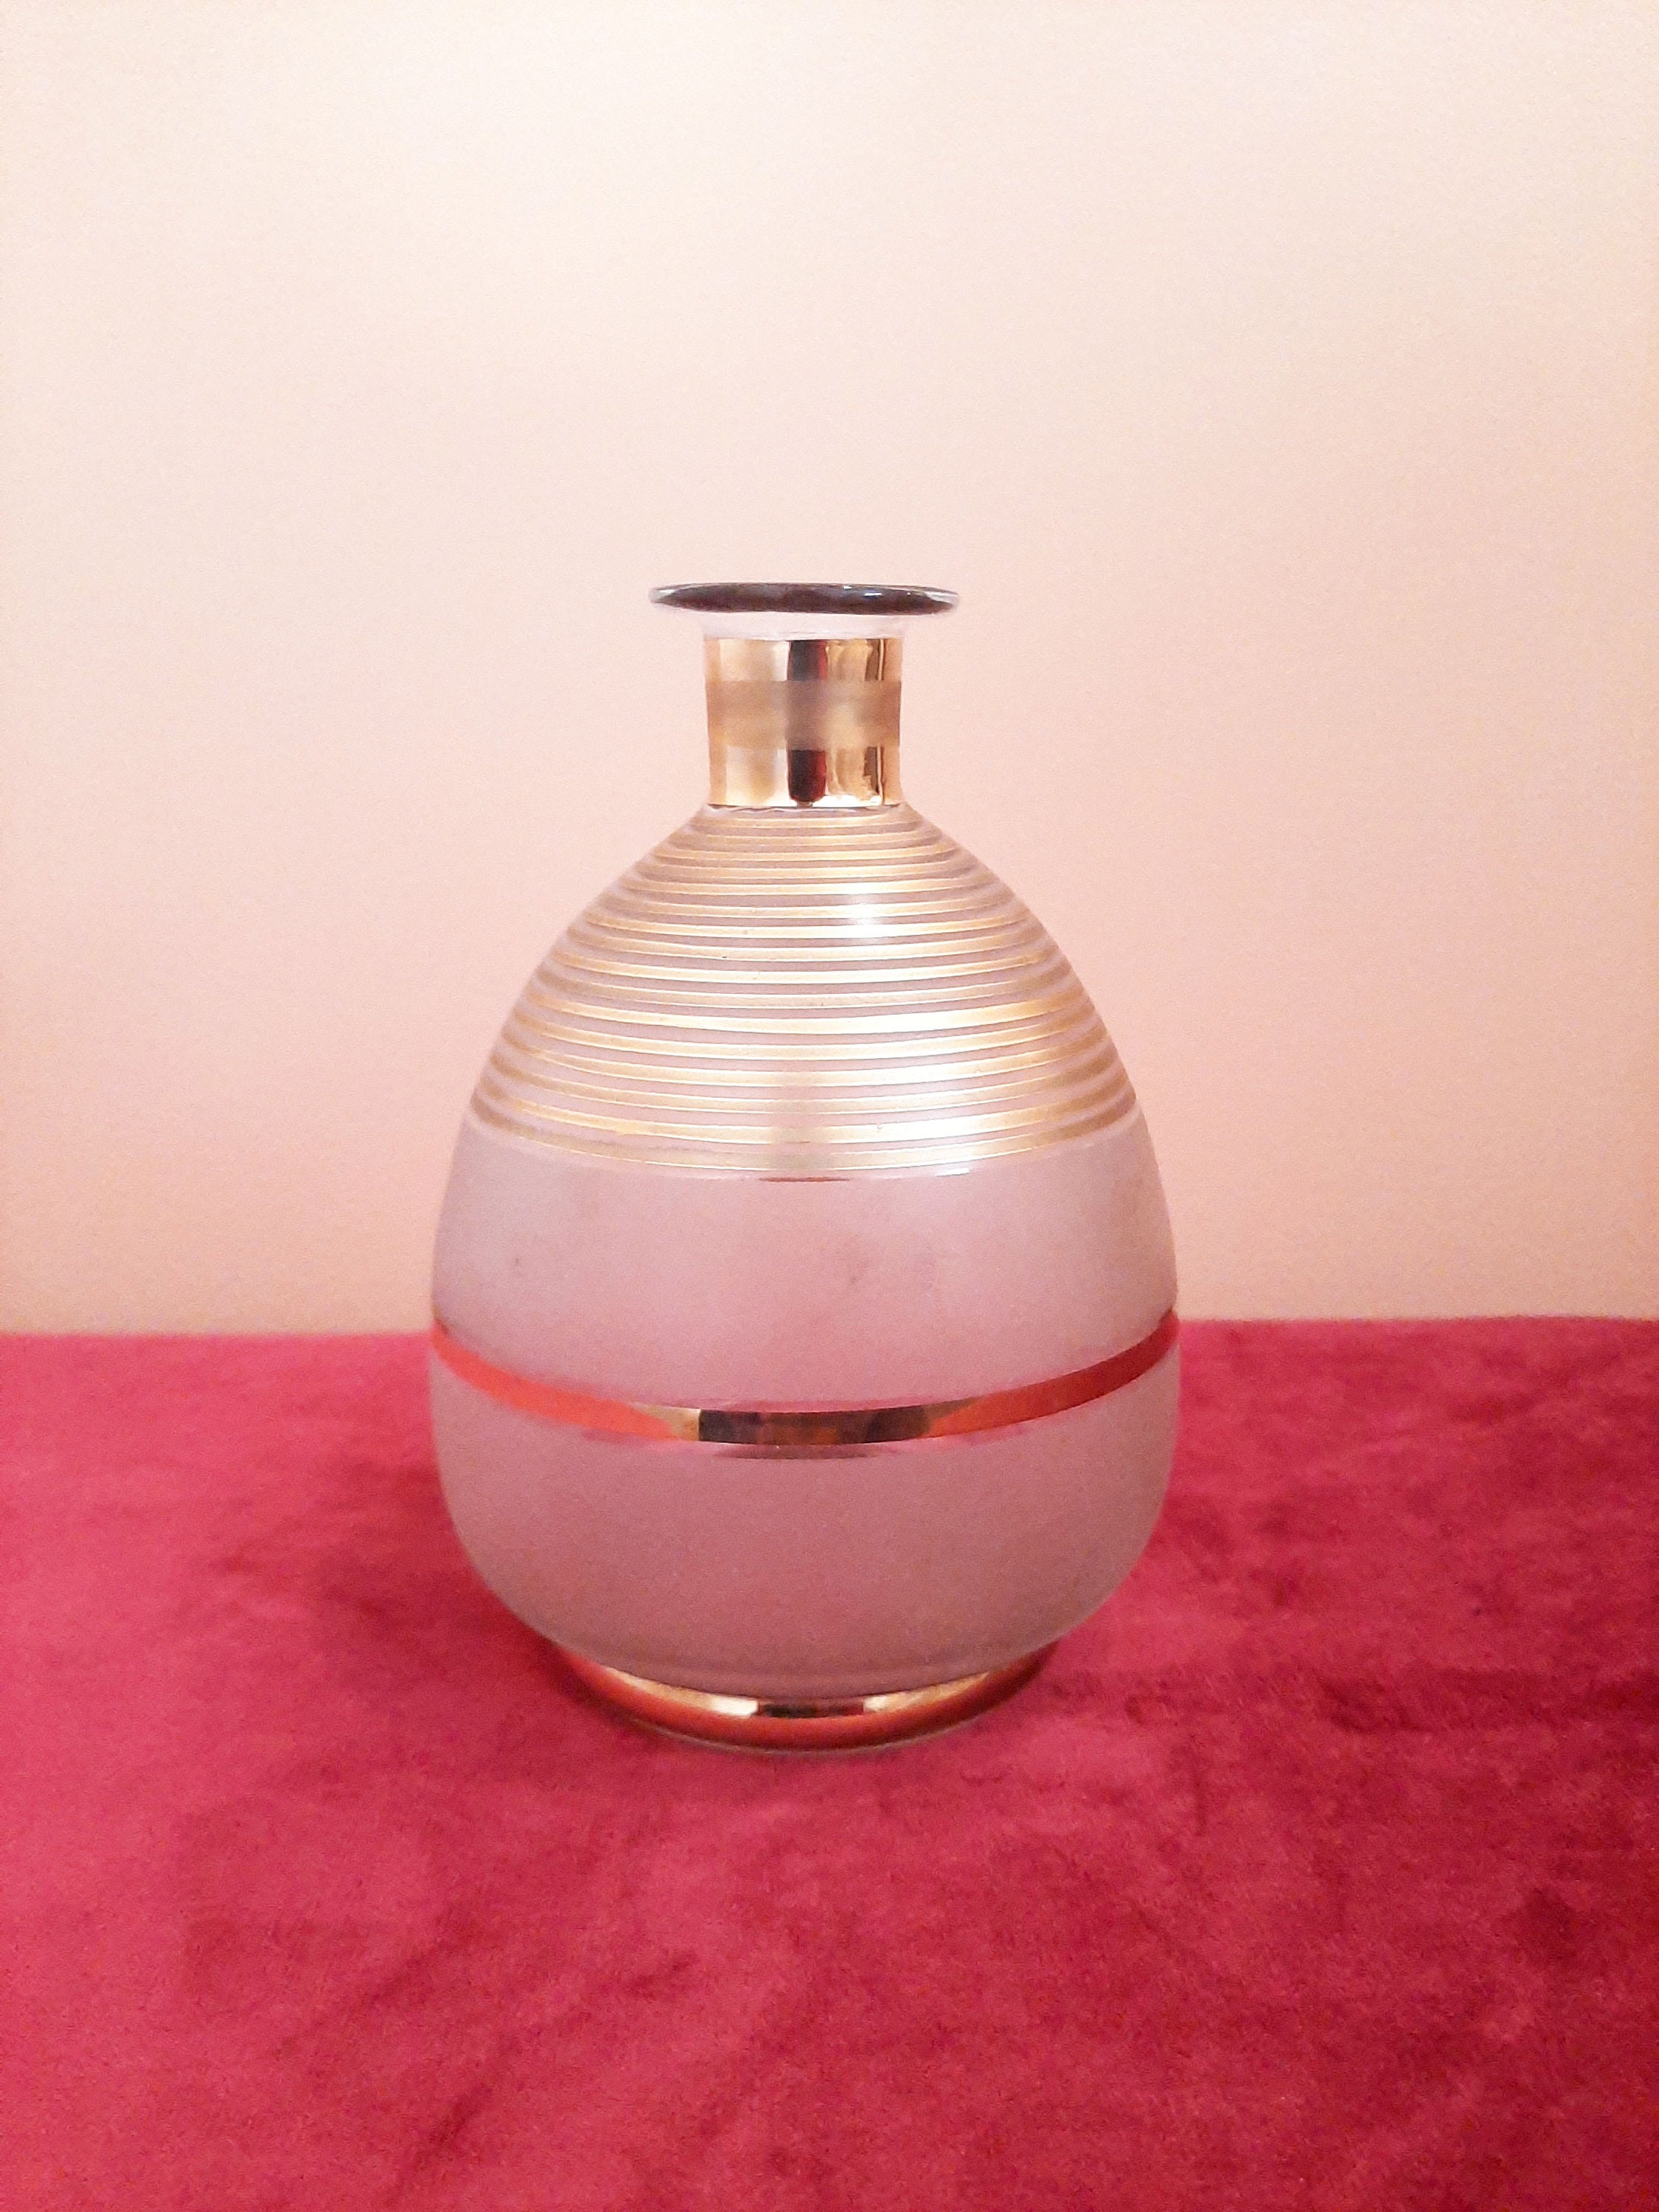 Ancien Petit Vase en Verre Vintage Francais, Transparent et Dorée, Forme Rétro Style Des Années 1920